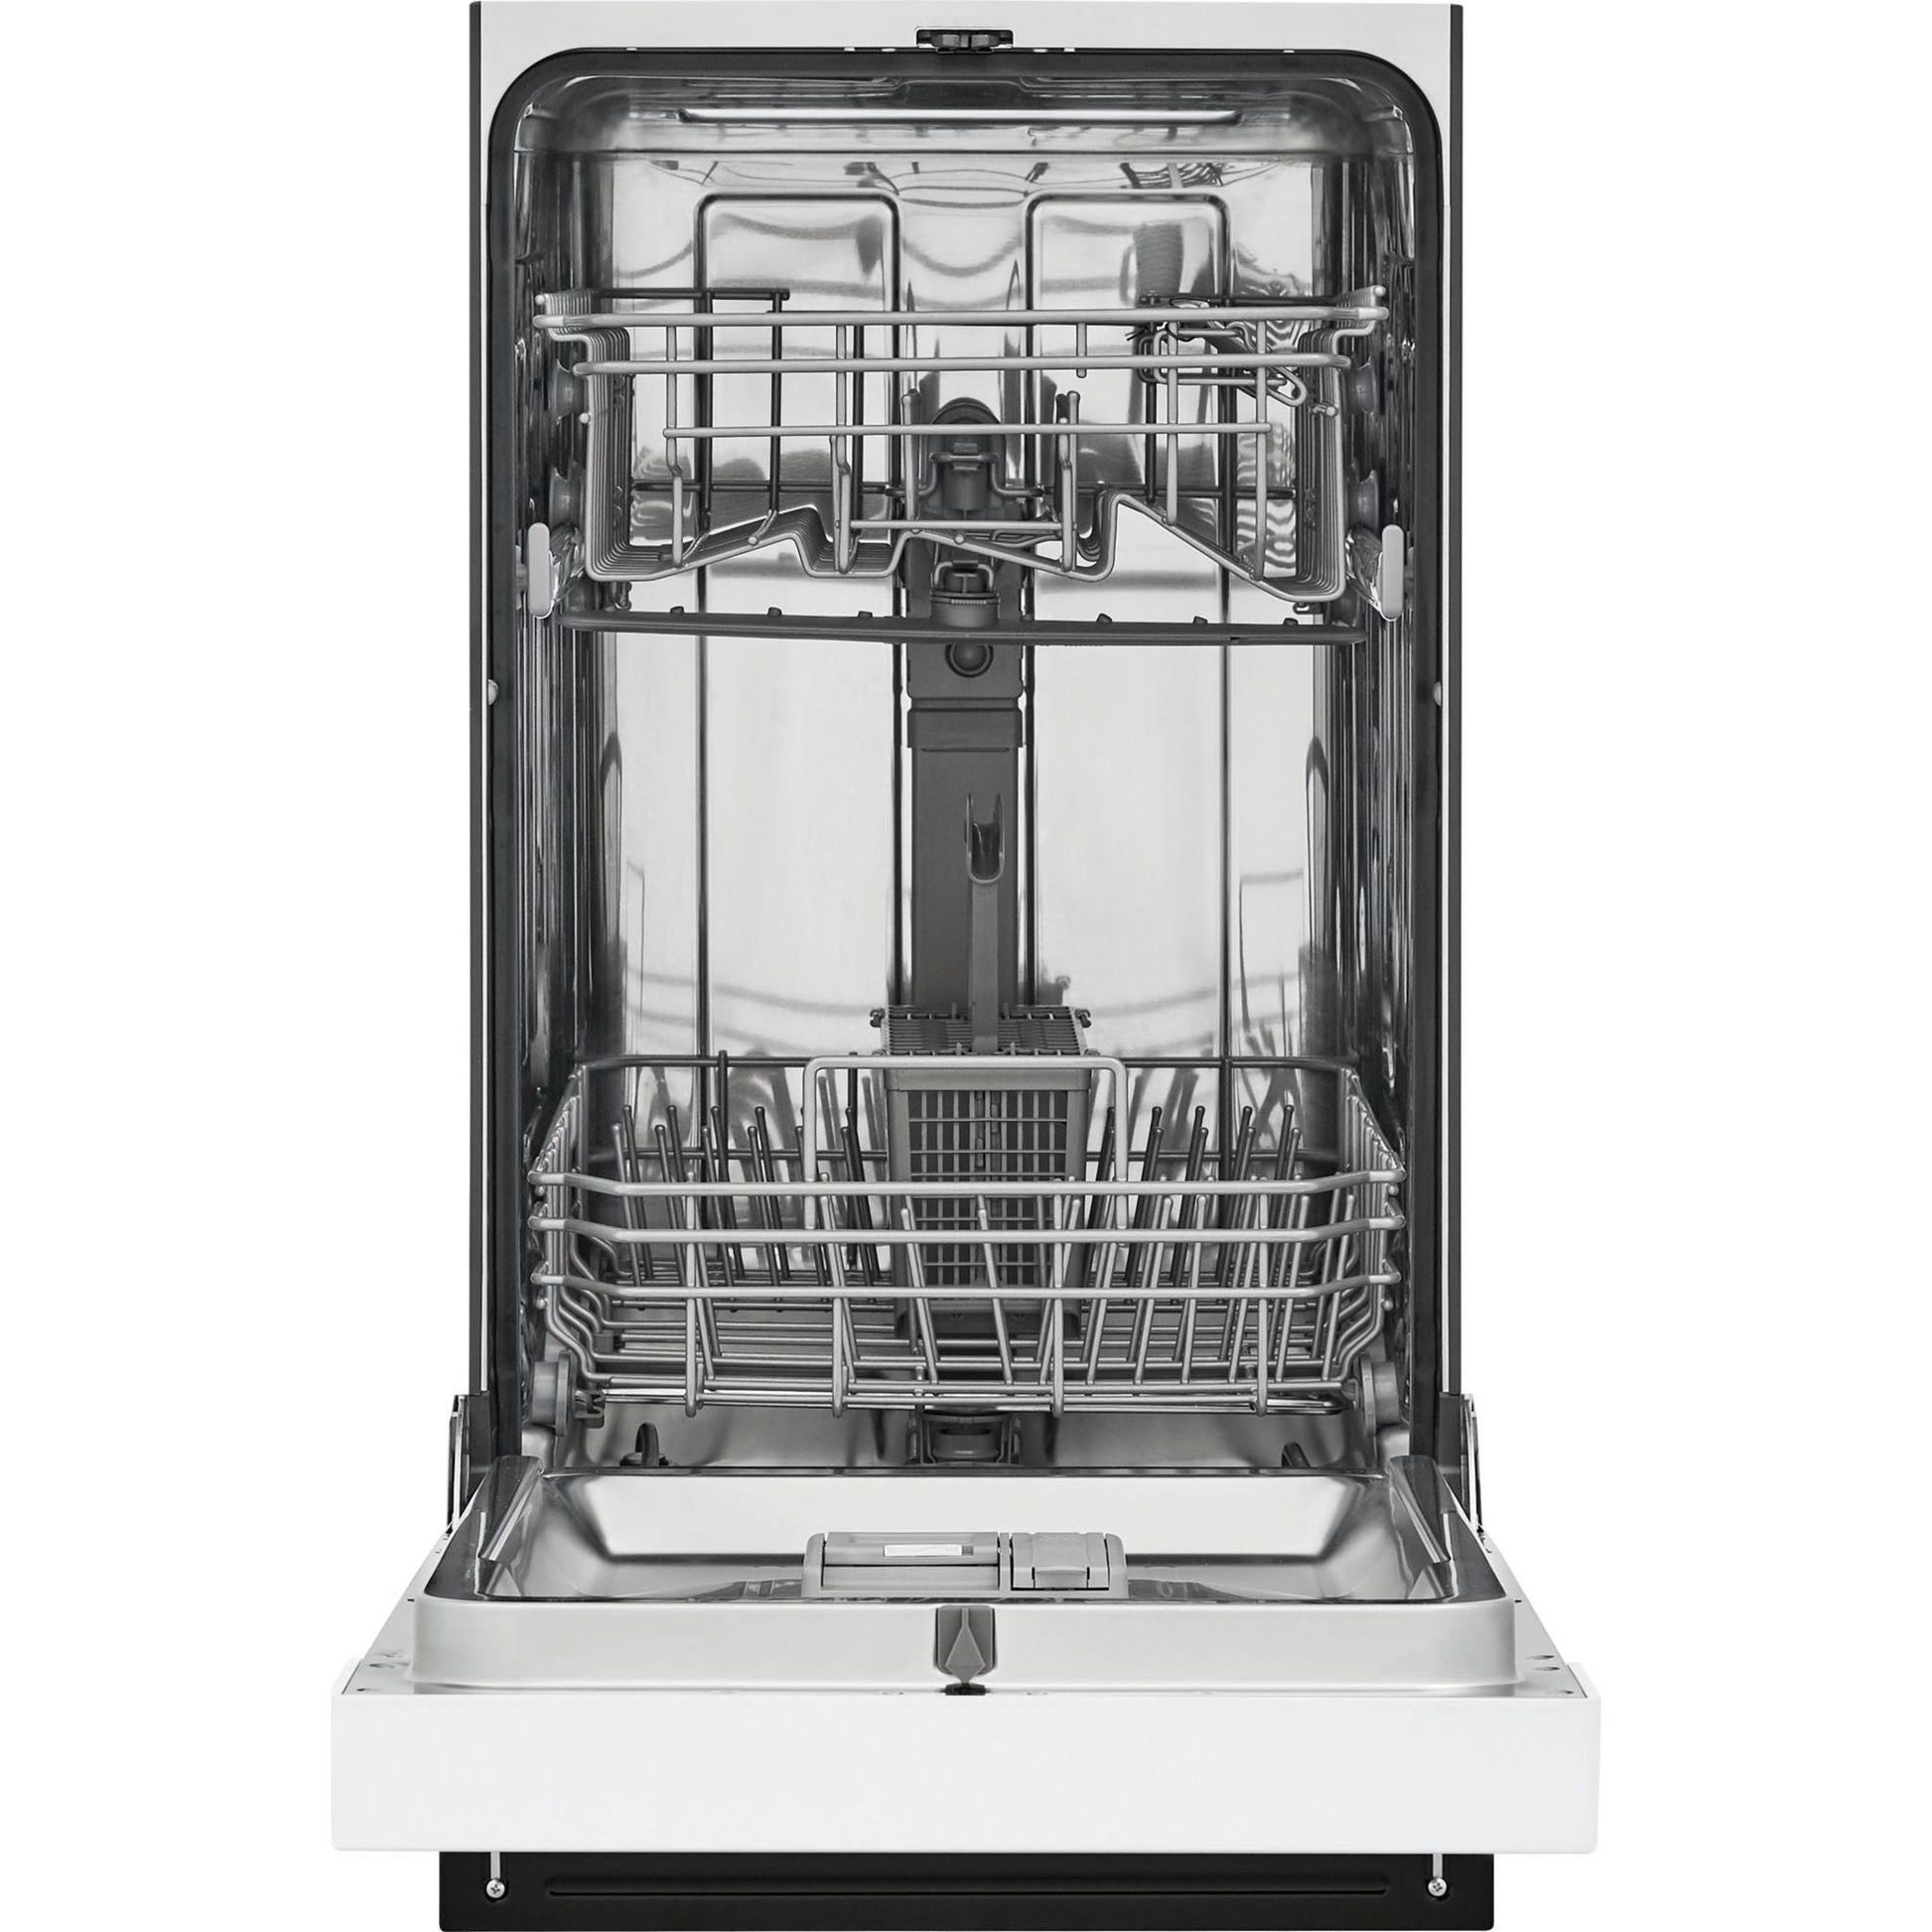 Frigidaire Dishwasher Stainless Steel Tub (FFBD1831UW) - White